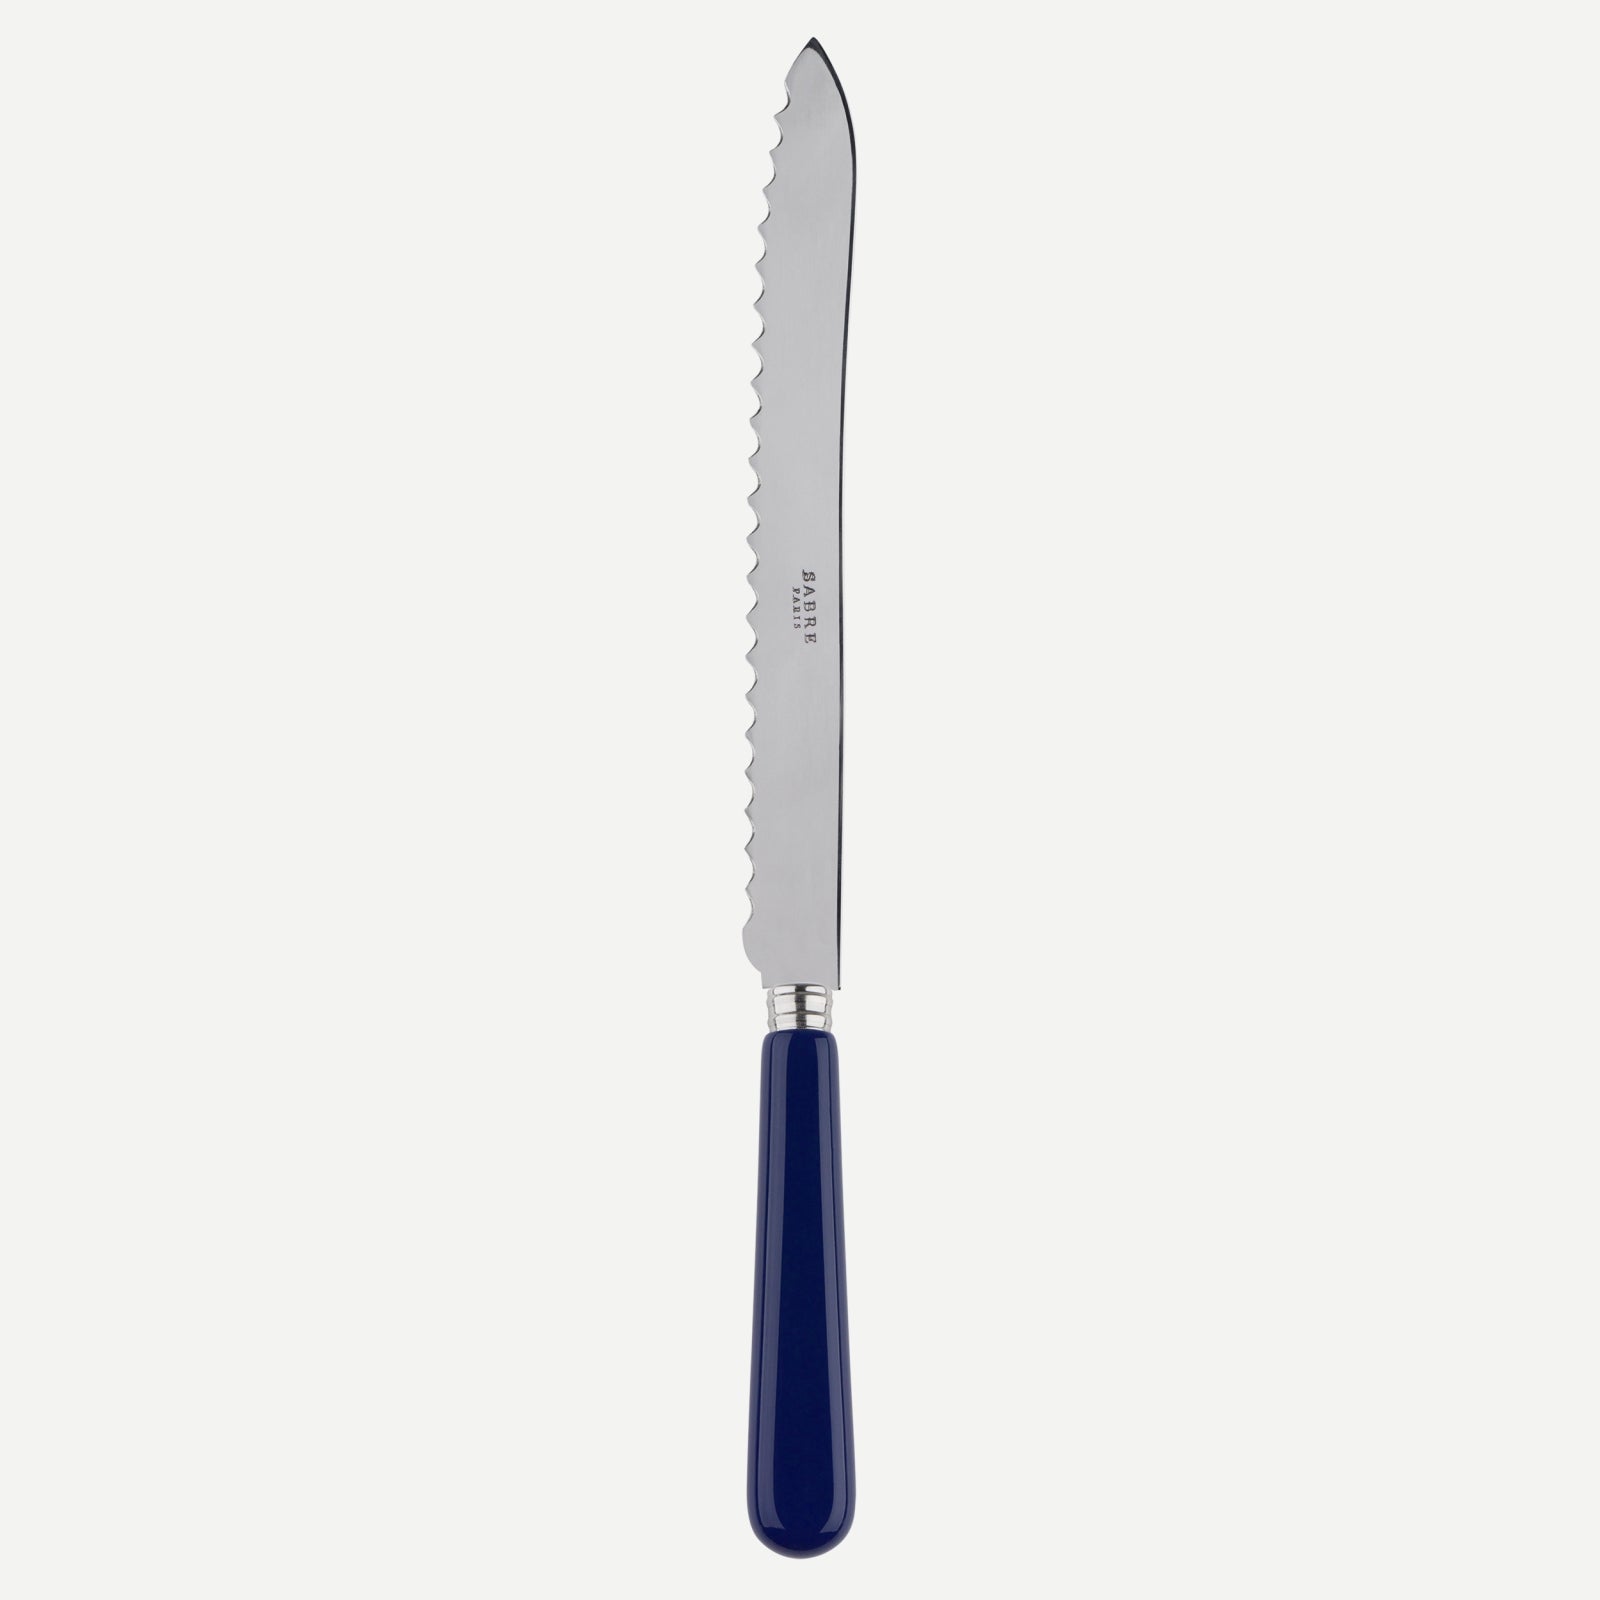 Bread knife - Pop unis - Navy blue